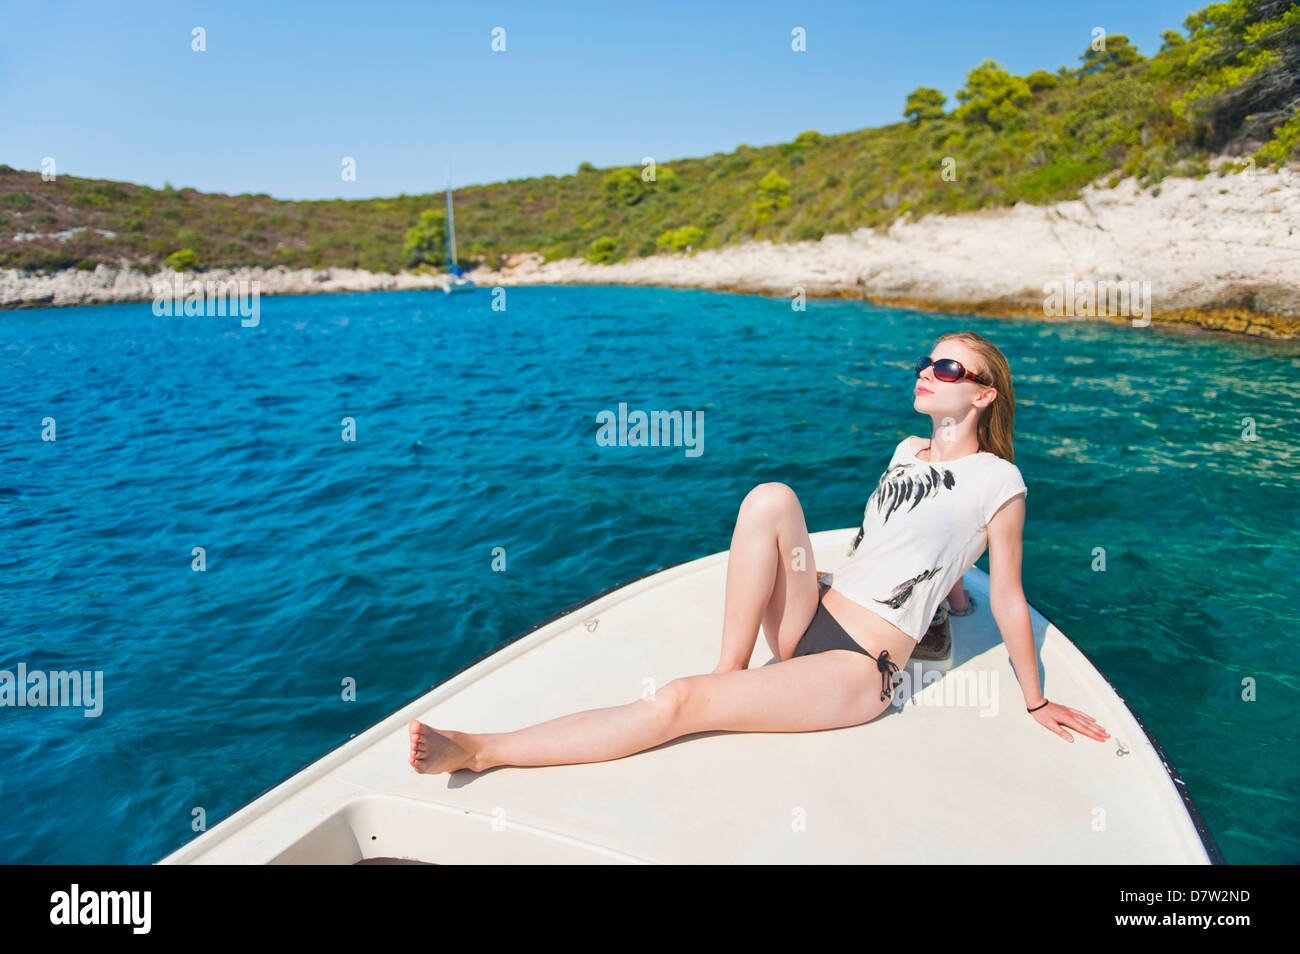 Turismo a prendere il sole su una barca in isole di Pakleni (Isole Paklinski), Isola di Hvar costa dalmata, Mare Adriatico, Croazia Foto Stock